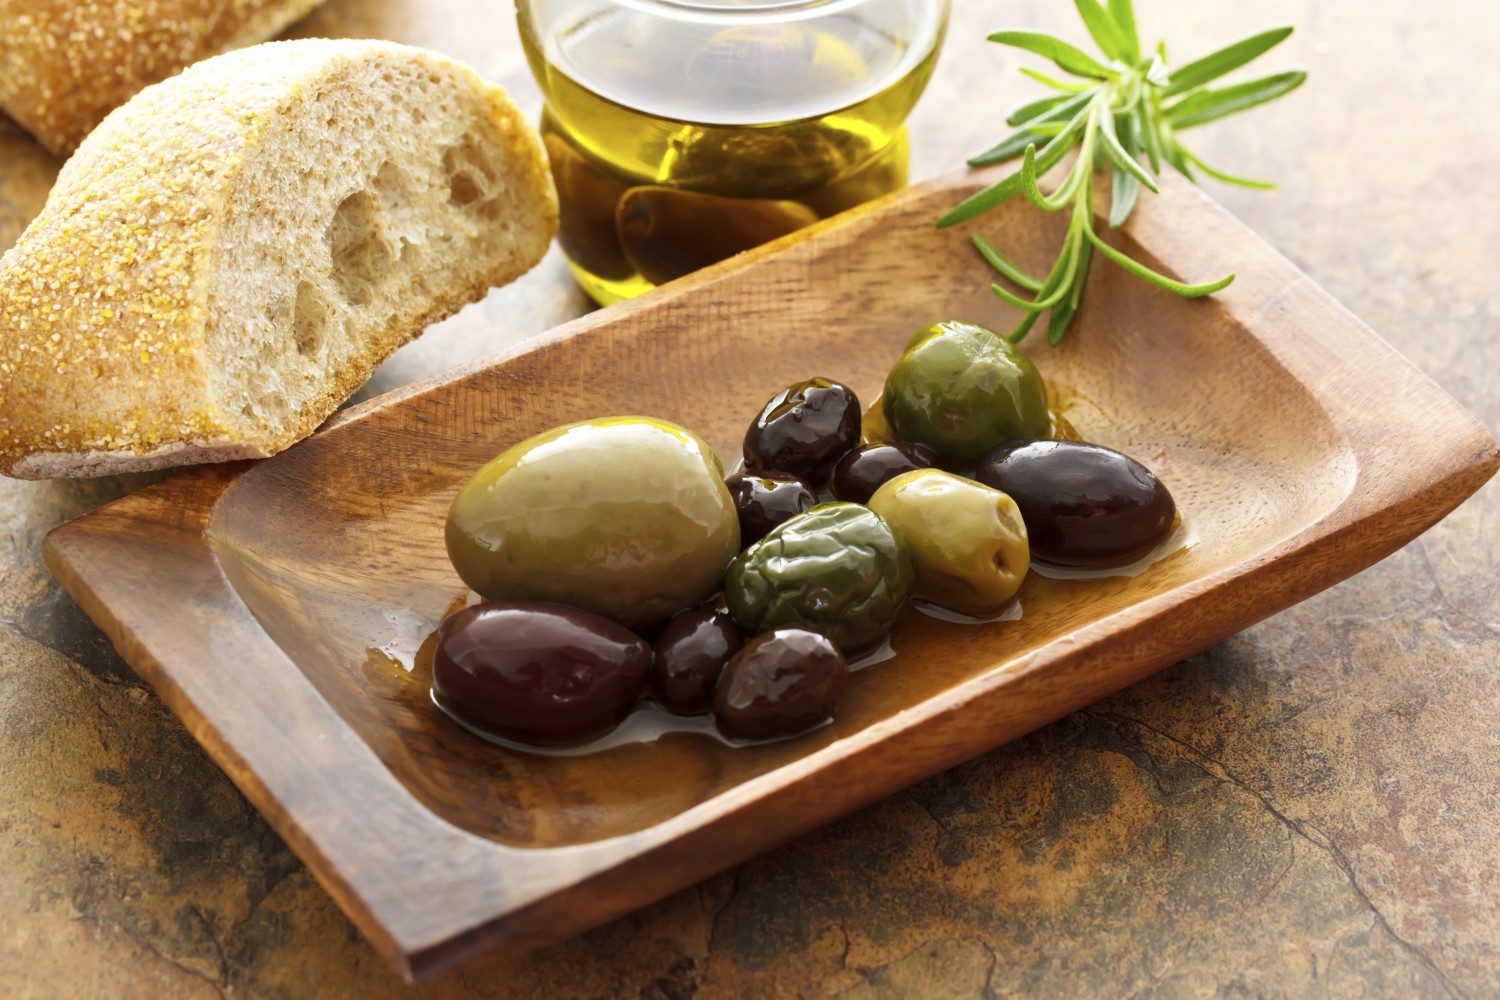 Bread olive oil. Оливки в Испании. Маслины Испания. Фестиваль оливок в Испании. Хлеб с маслинами.